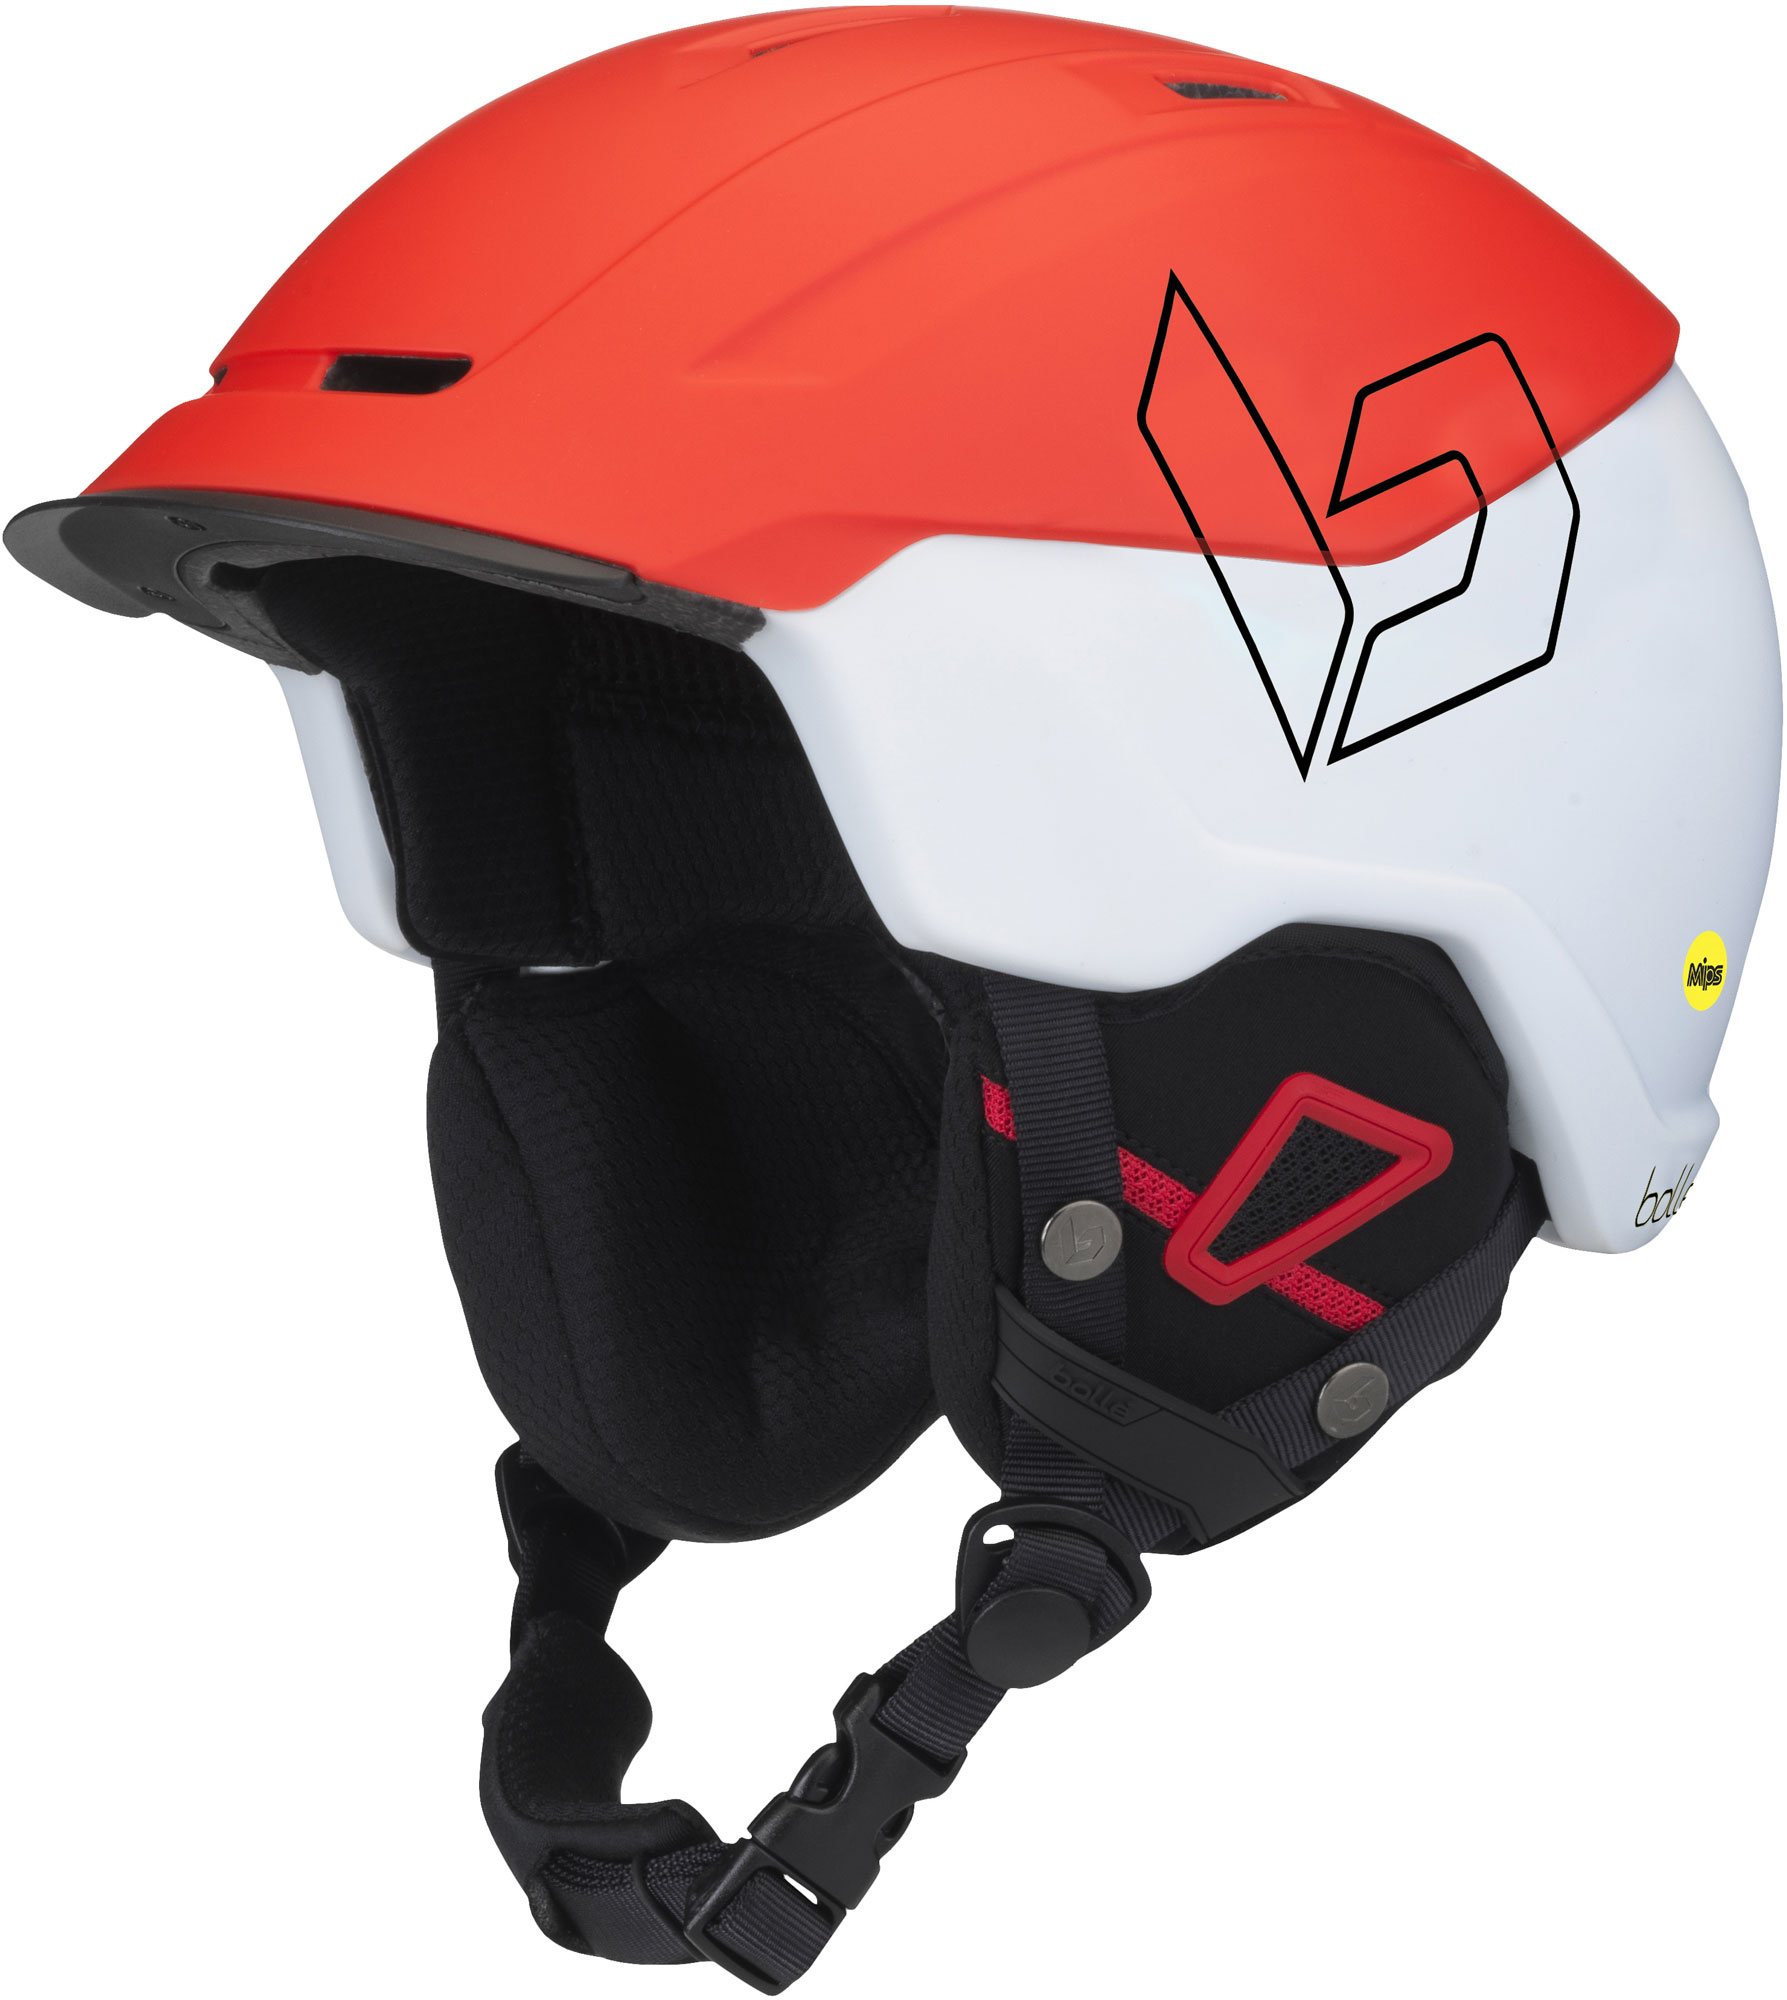 Freeride helmet with MIPS